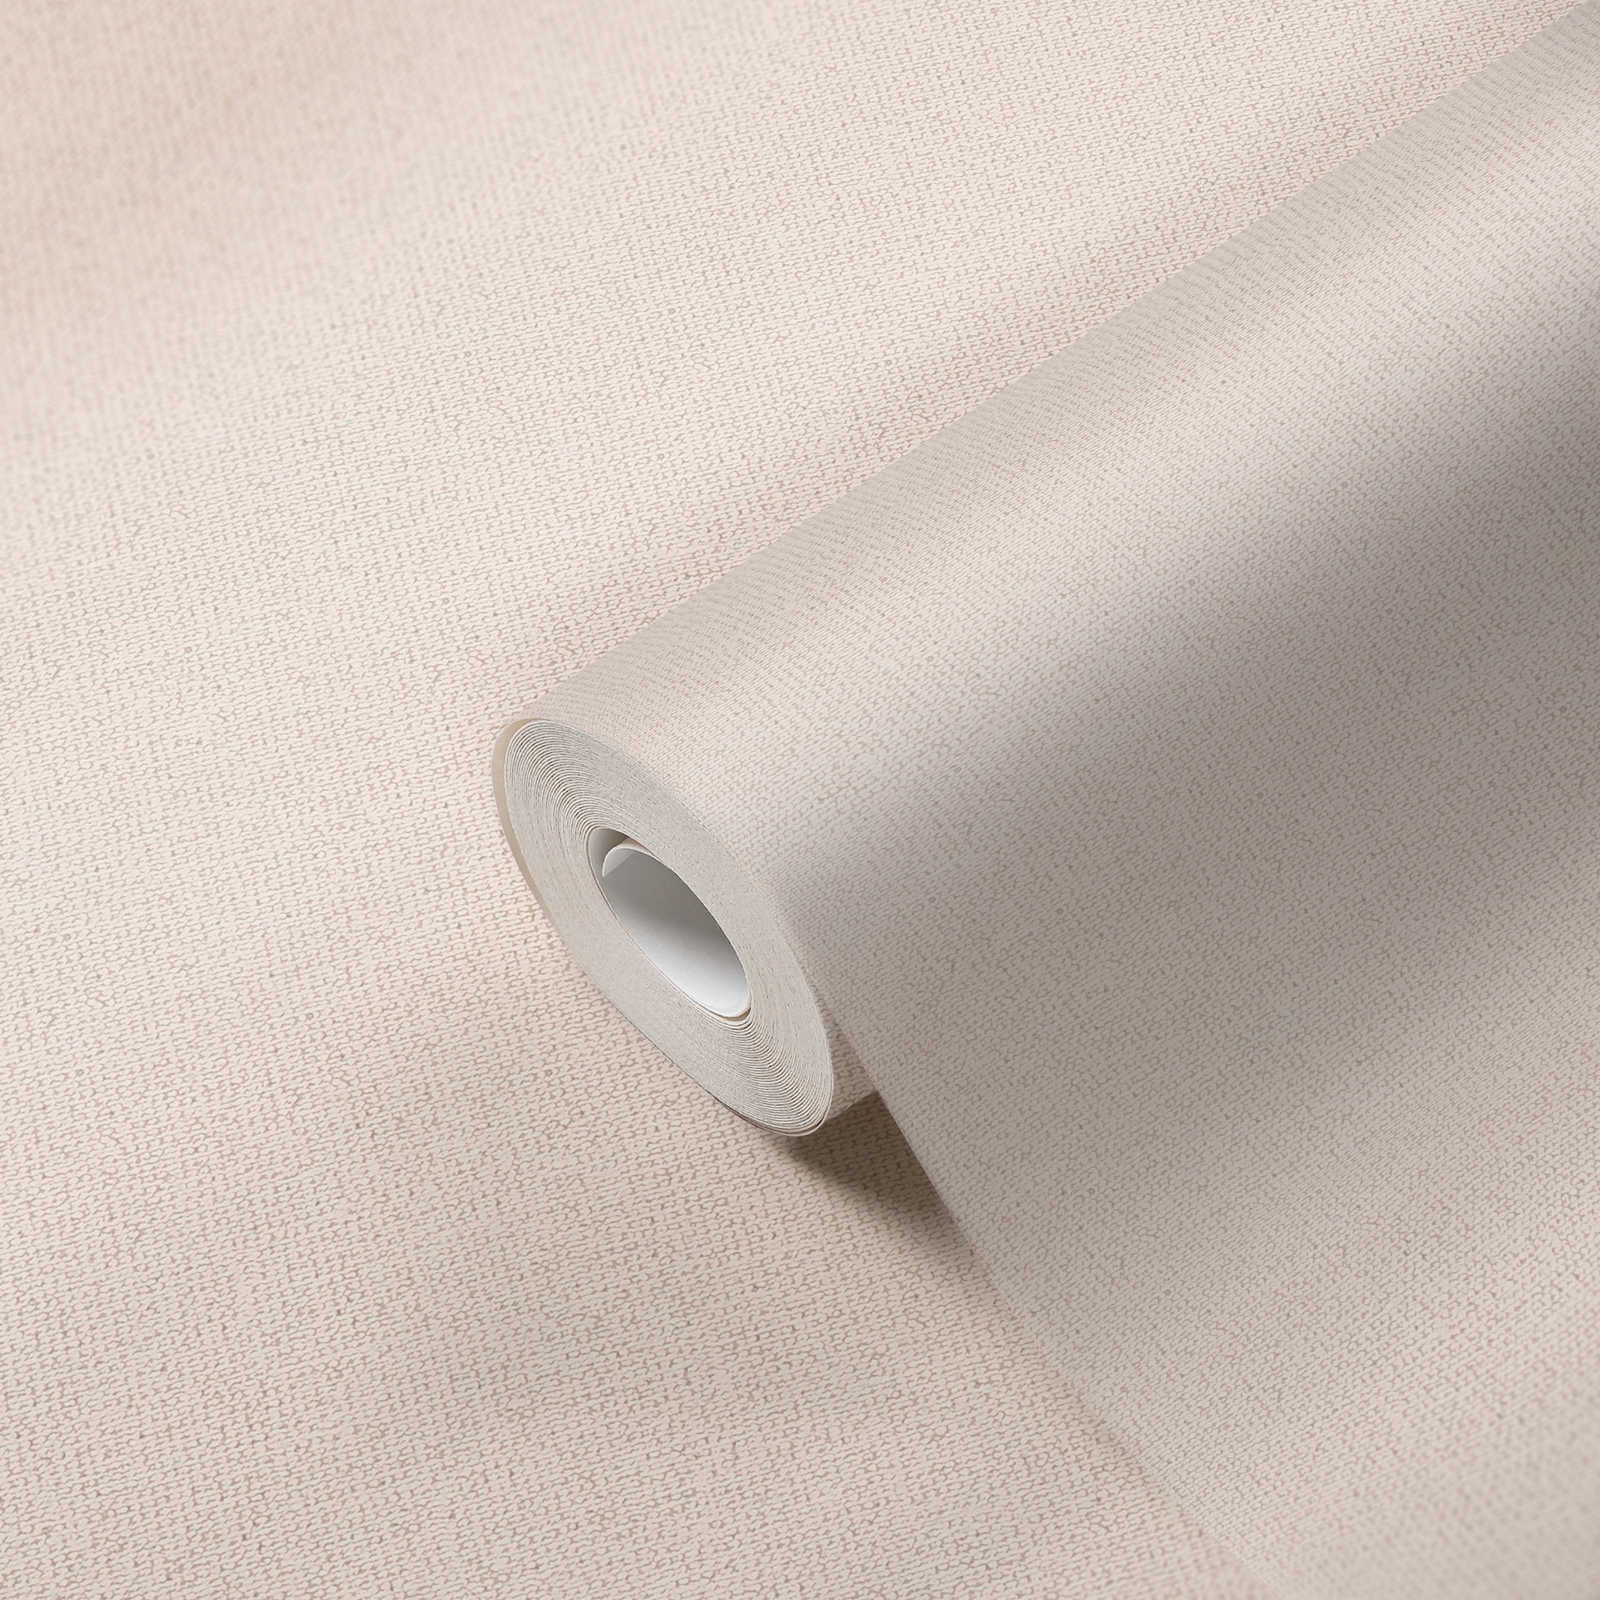             Papel pintado natural no tejido en mate con estructura de lino - crema, beige
        